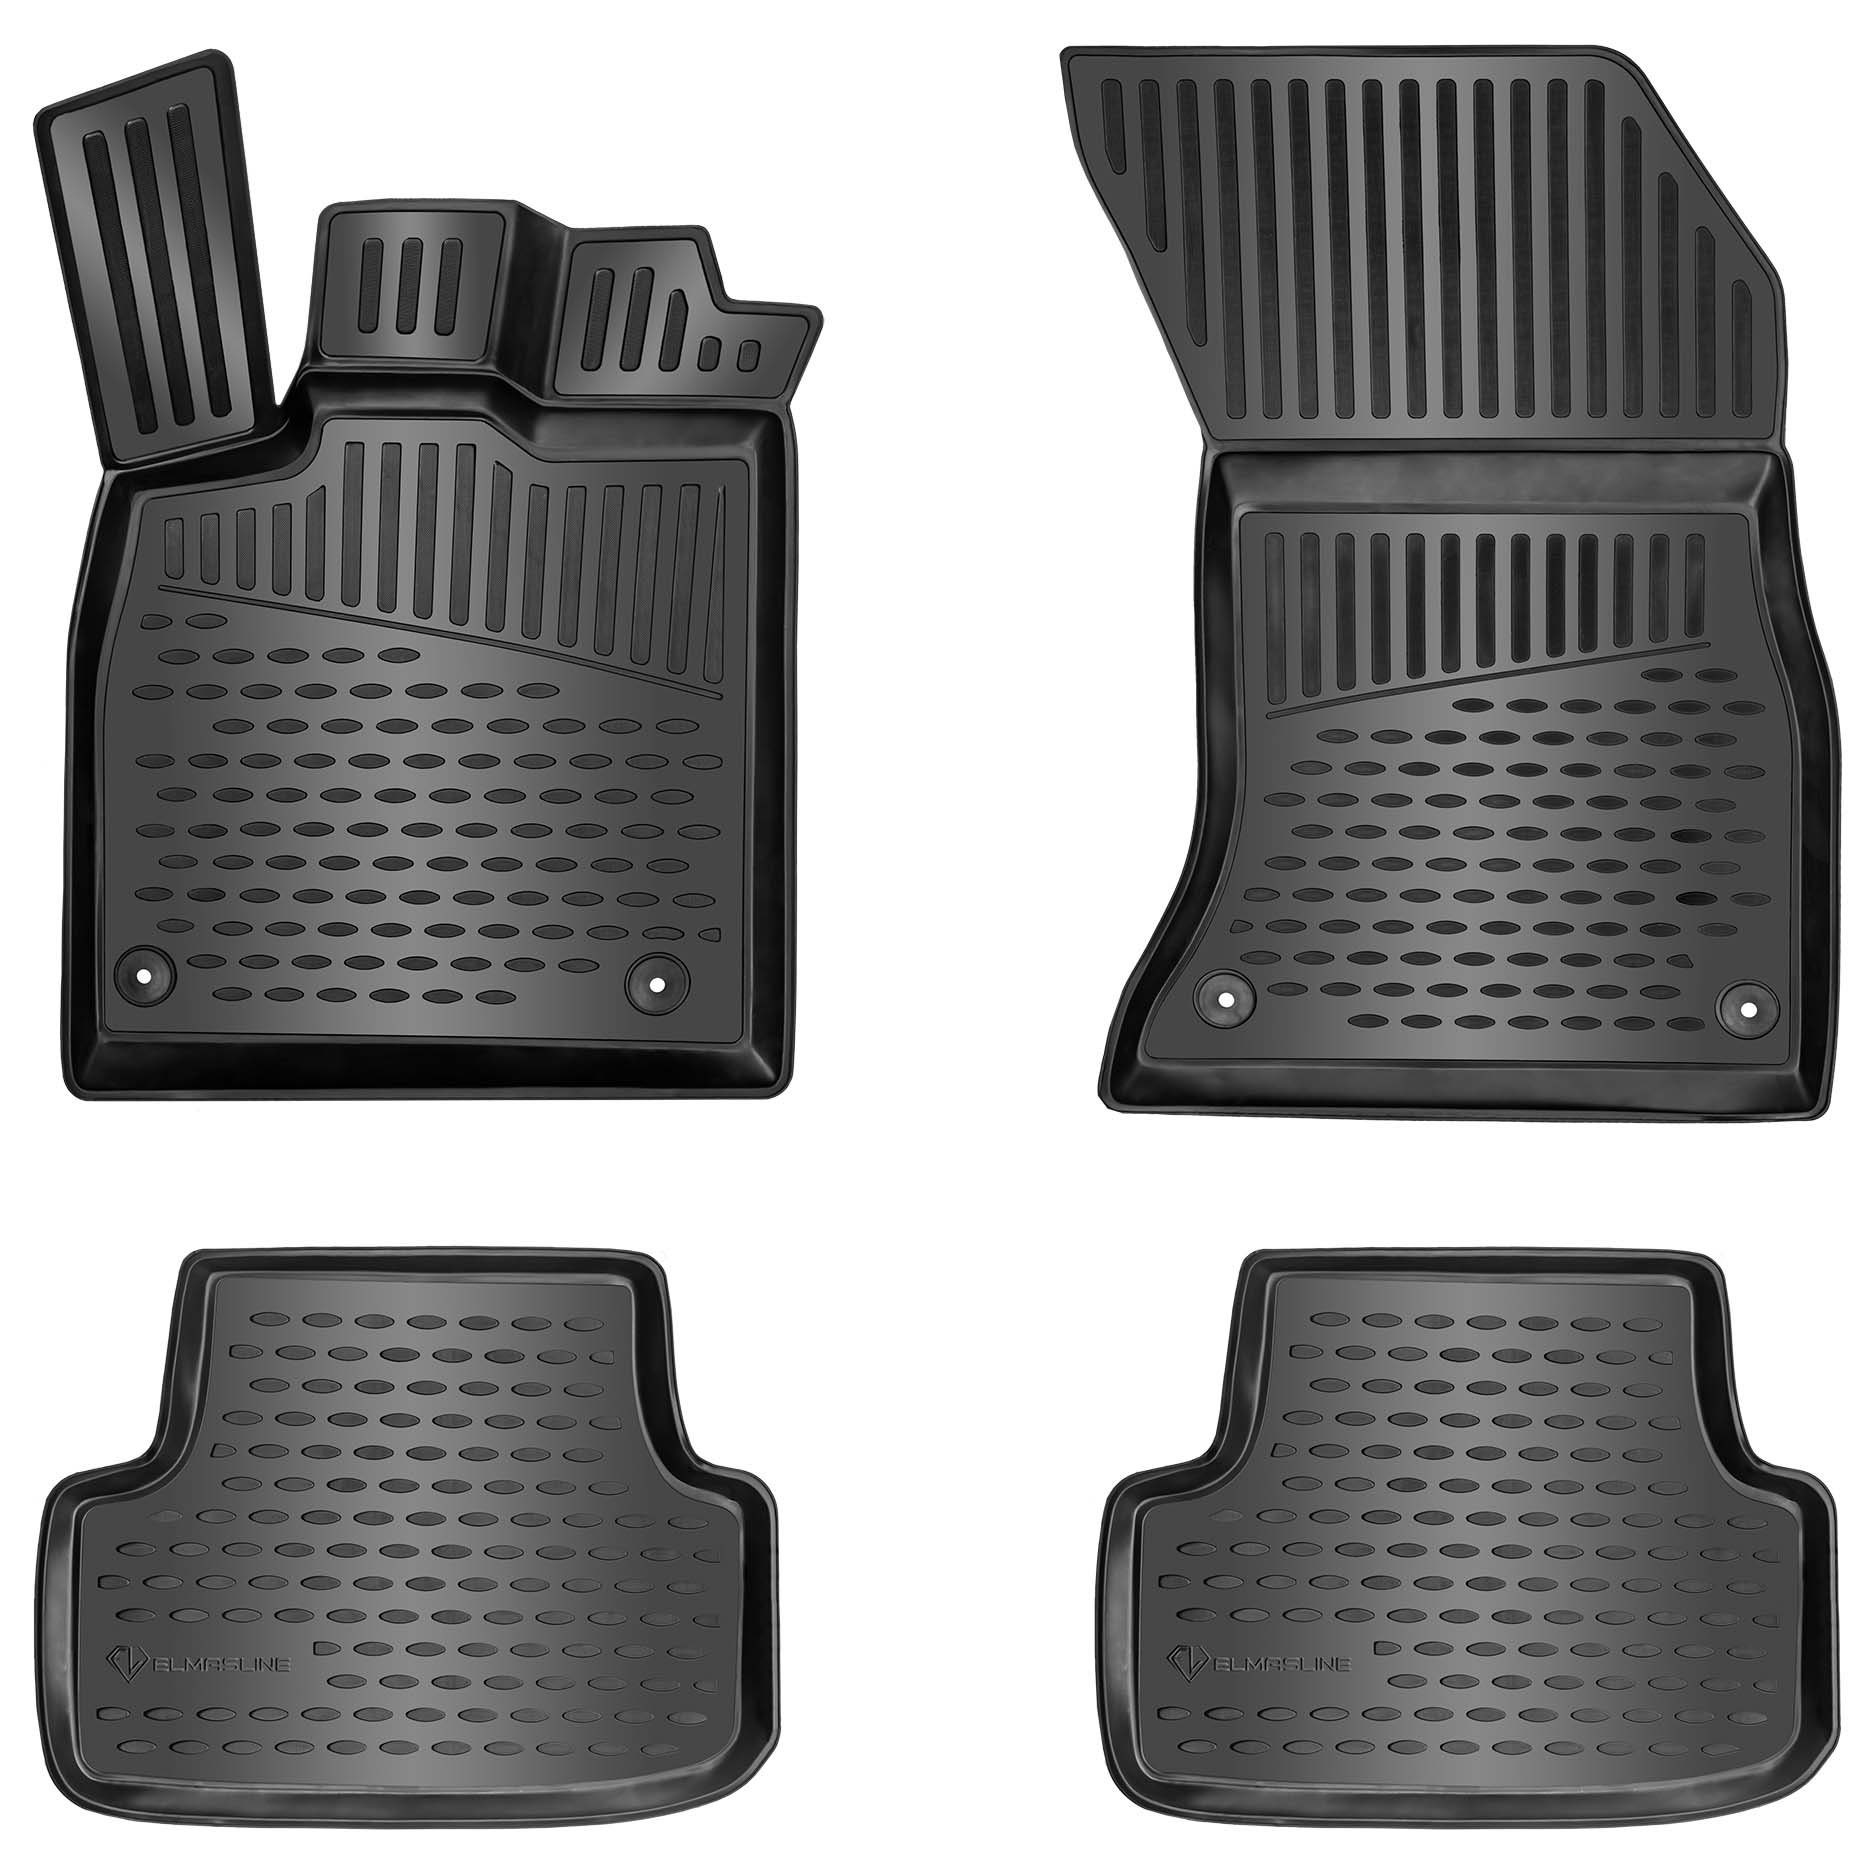 ELMASLINE Auto-Fußmatten Gummi (4 St), für KIA VENGA (2009-2019) - 3D Gummimatten mit extra hohem Rand für mehr Schutz - Passend für Baujahre:, 2009 - 2019